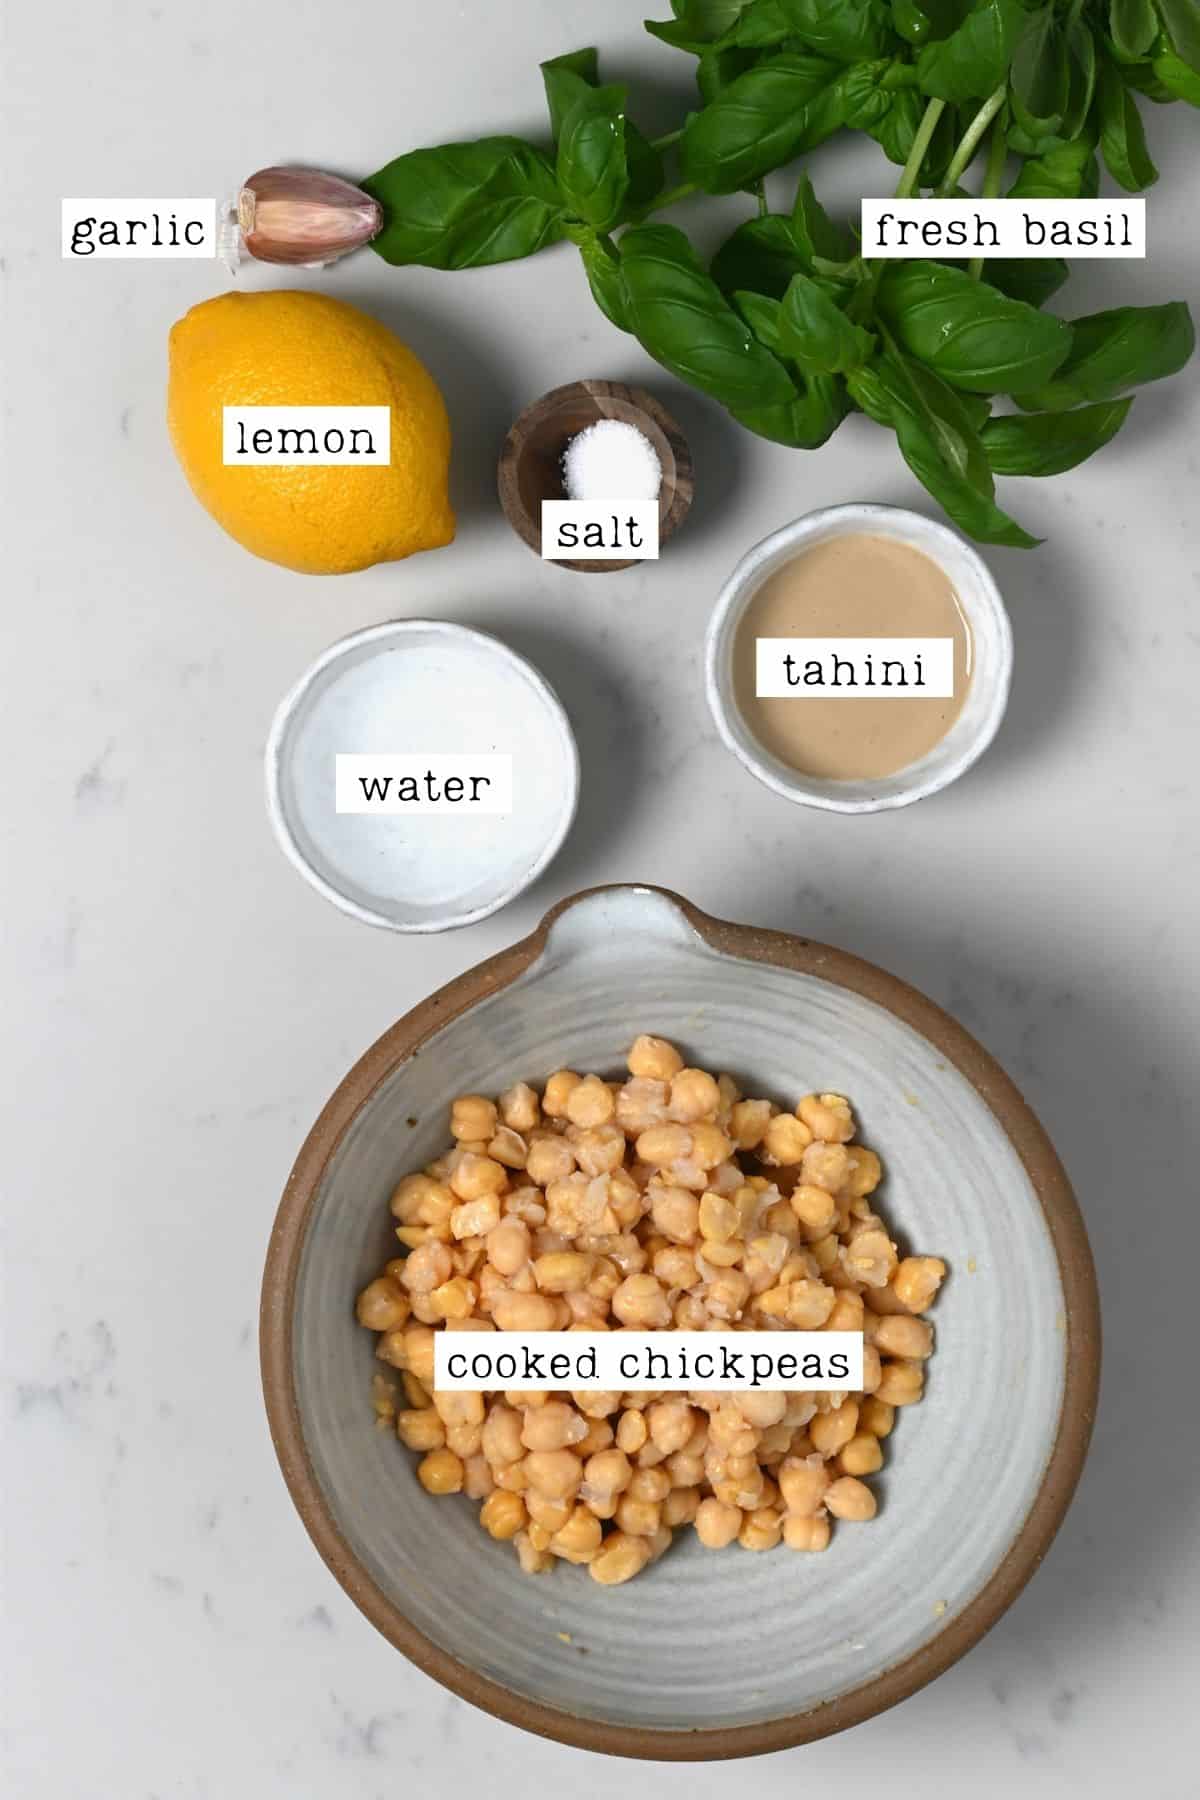 Ingredients for basil hummus